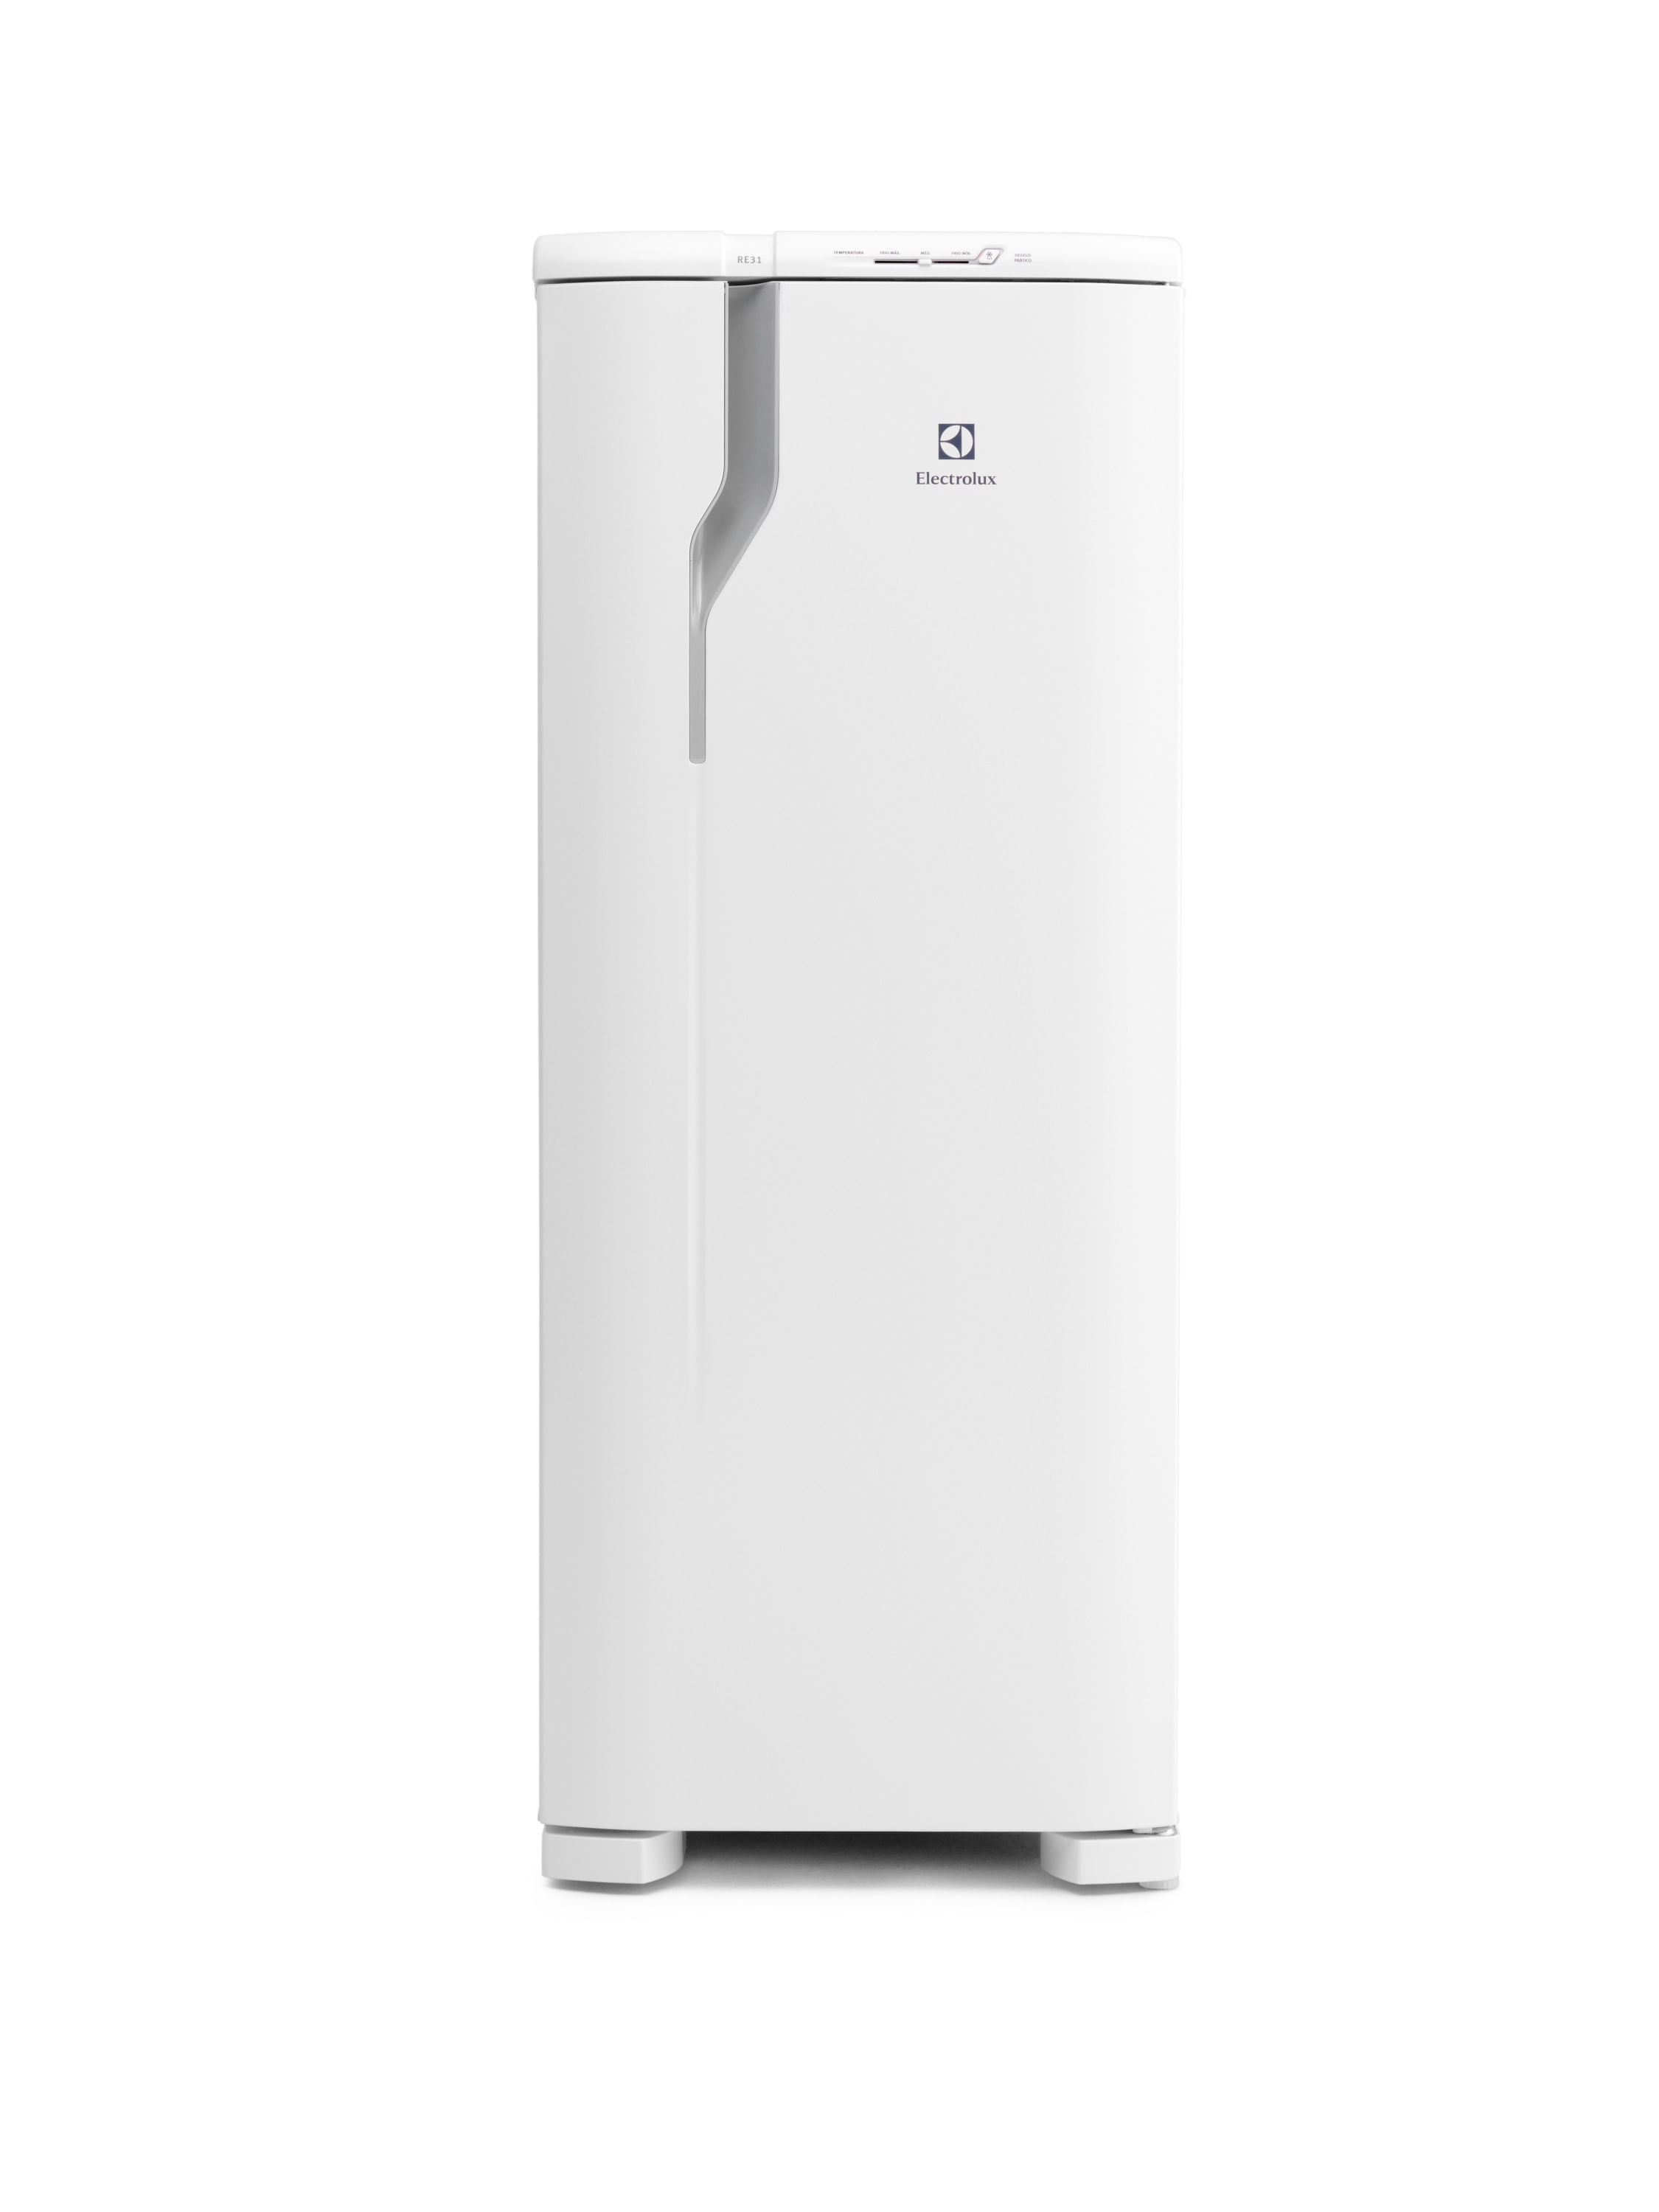 Geladeira/Refrigerador Cycle Defrost Electrolux Degelo Prático 240L Branco (RE31)